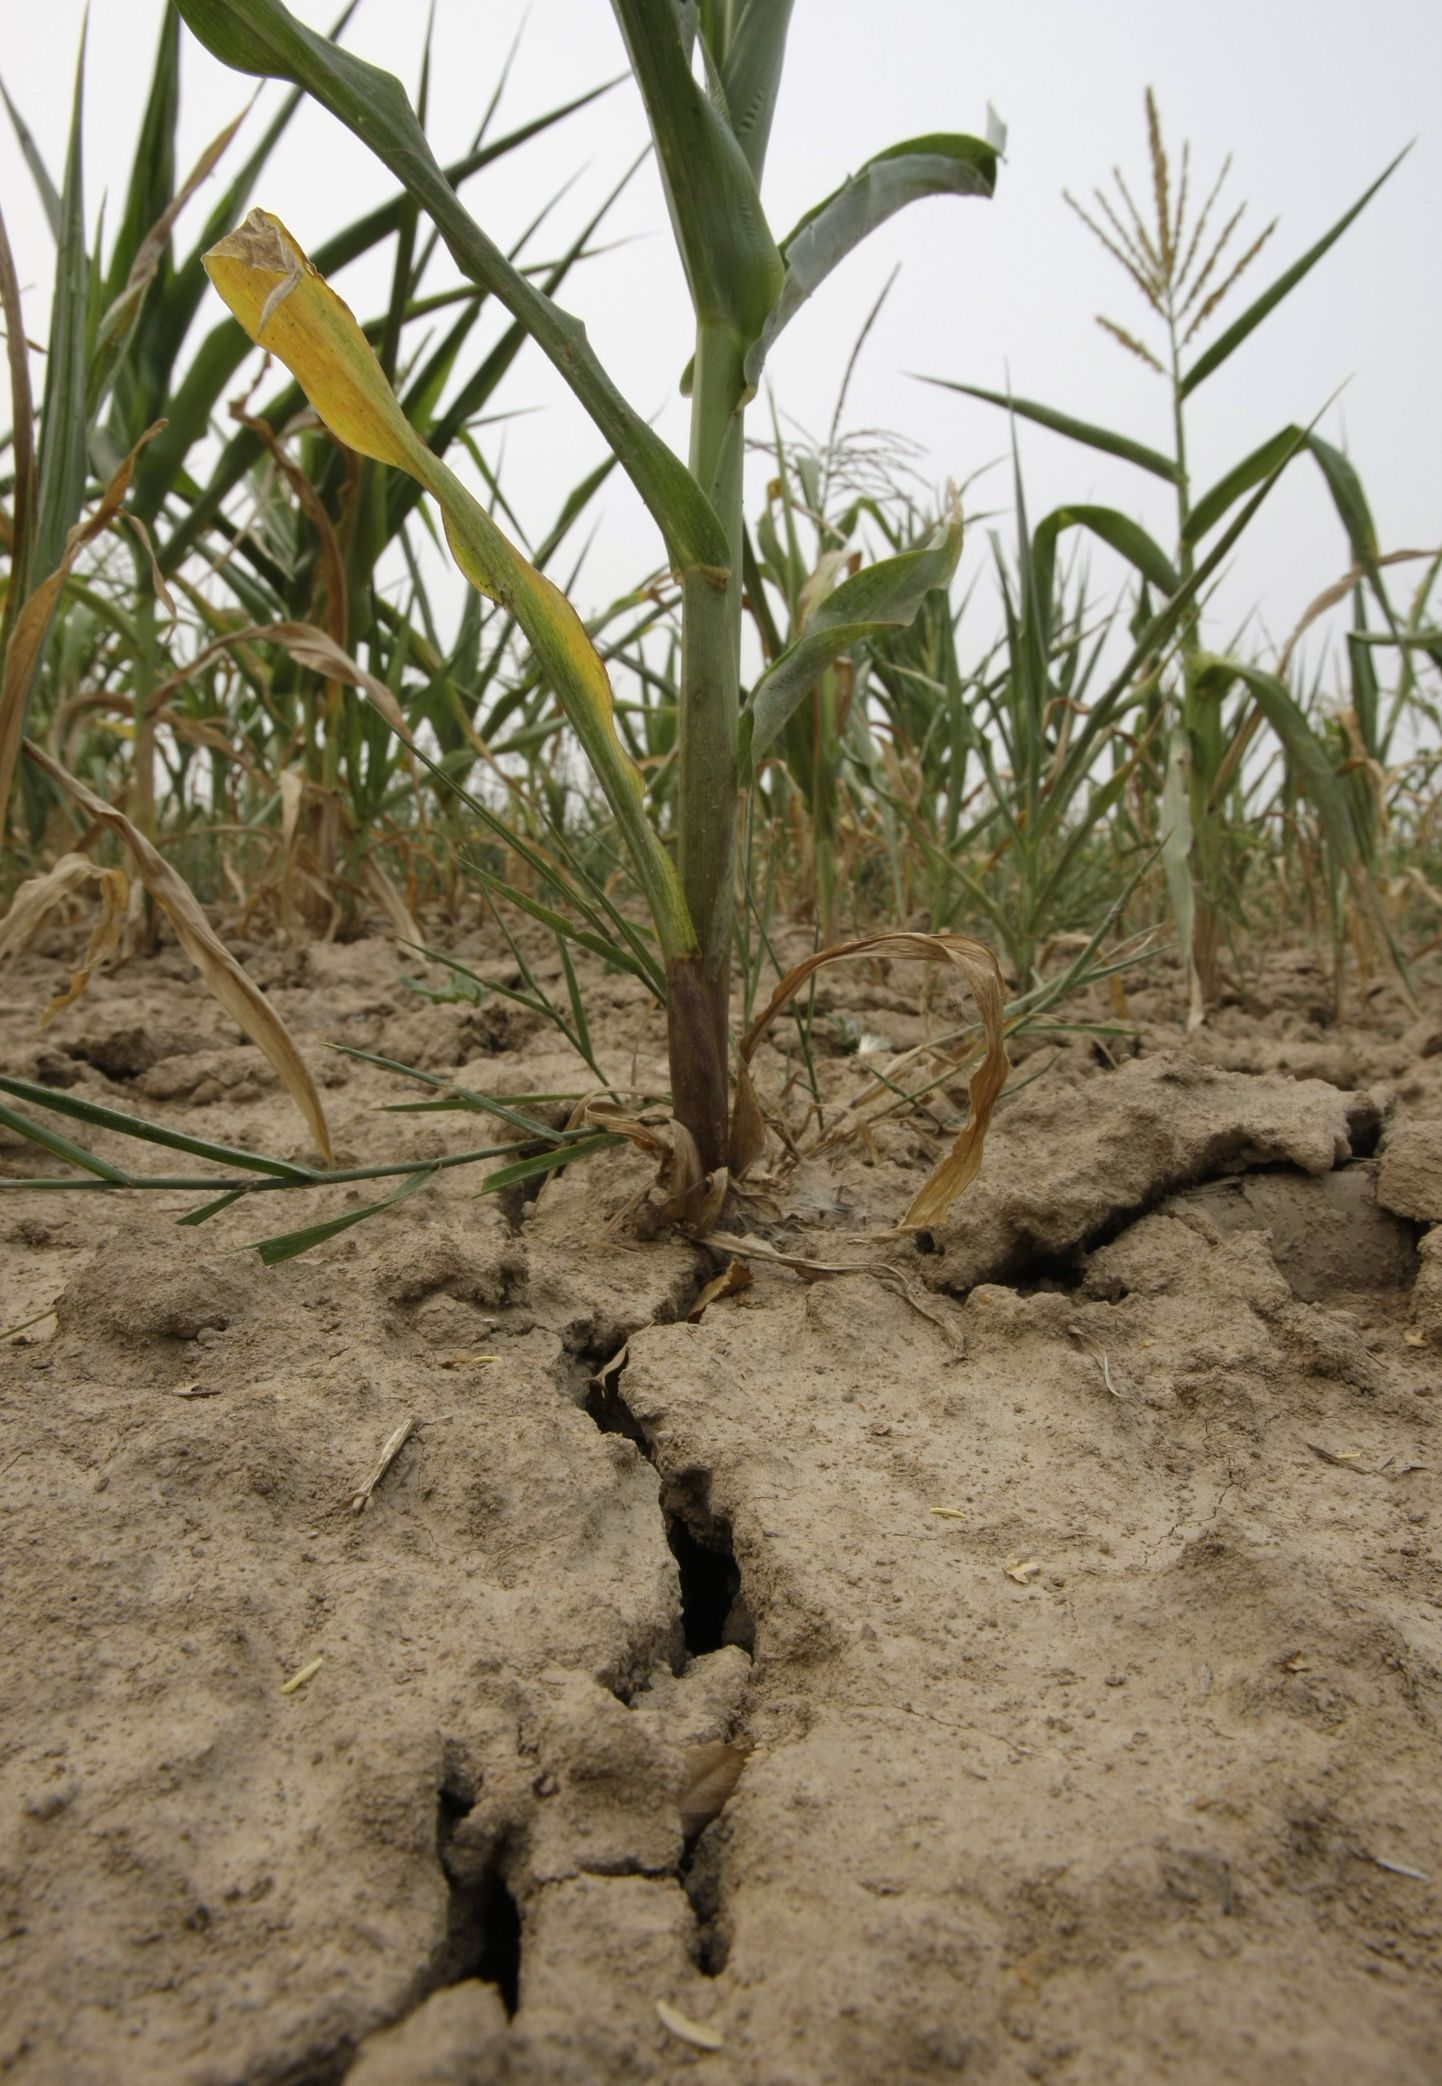 Venemaa on kaks kuud kannatanud anomaalset kuumust millega on kaasnenud tohutu kuivus. Pildil maisipõld.